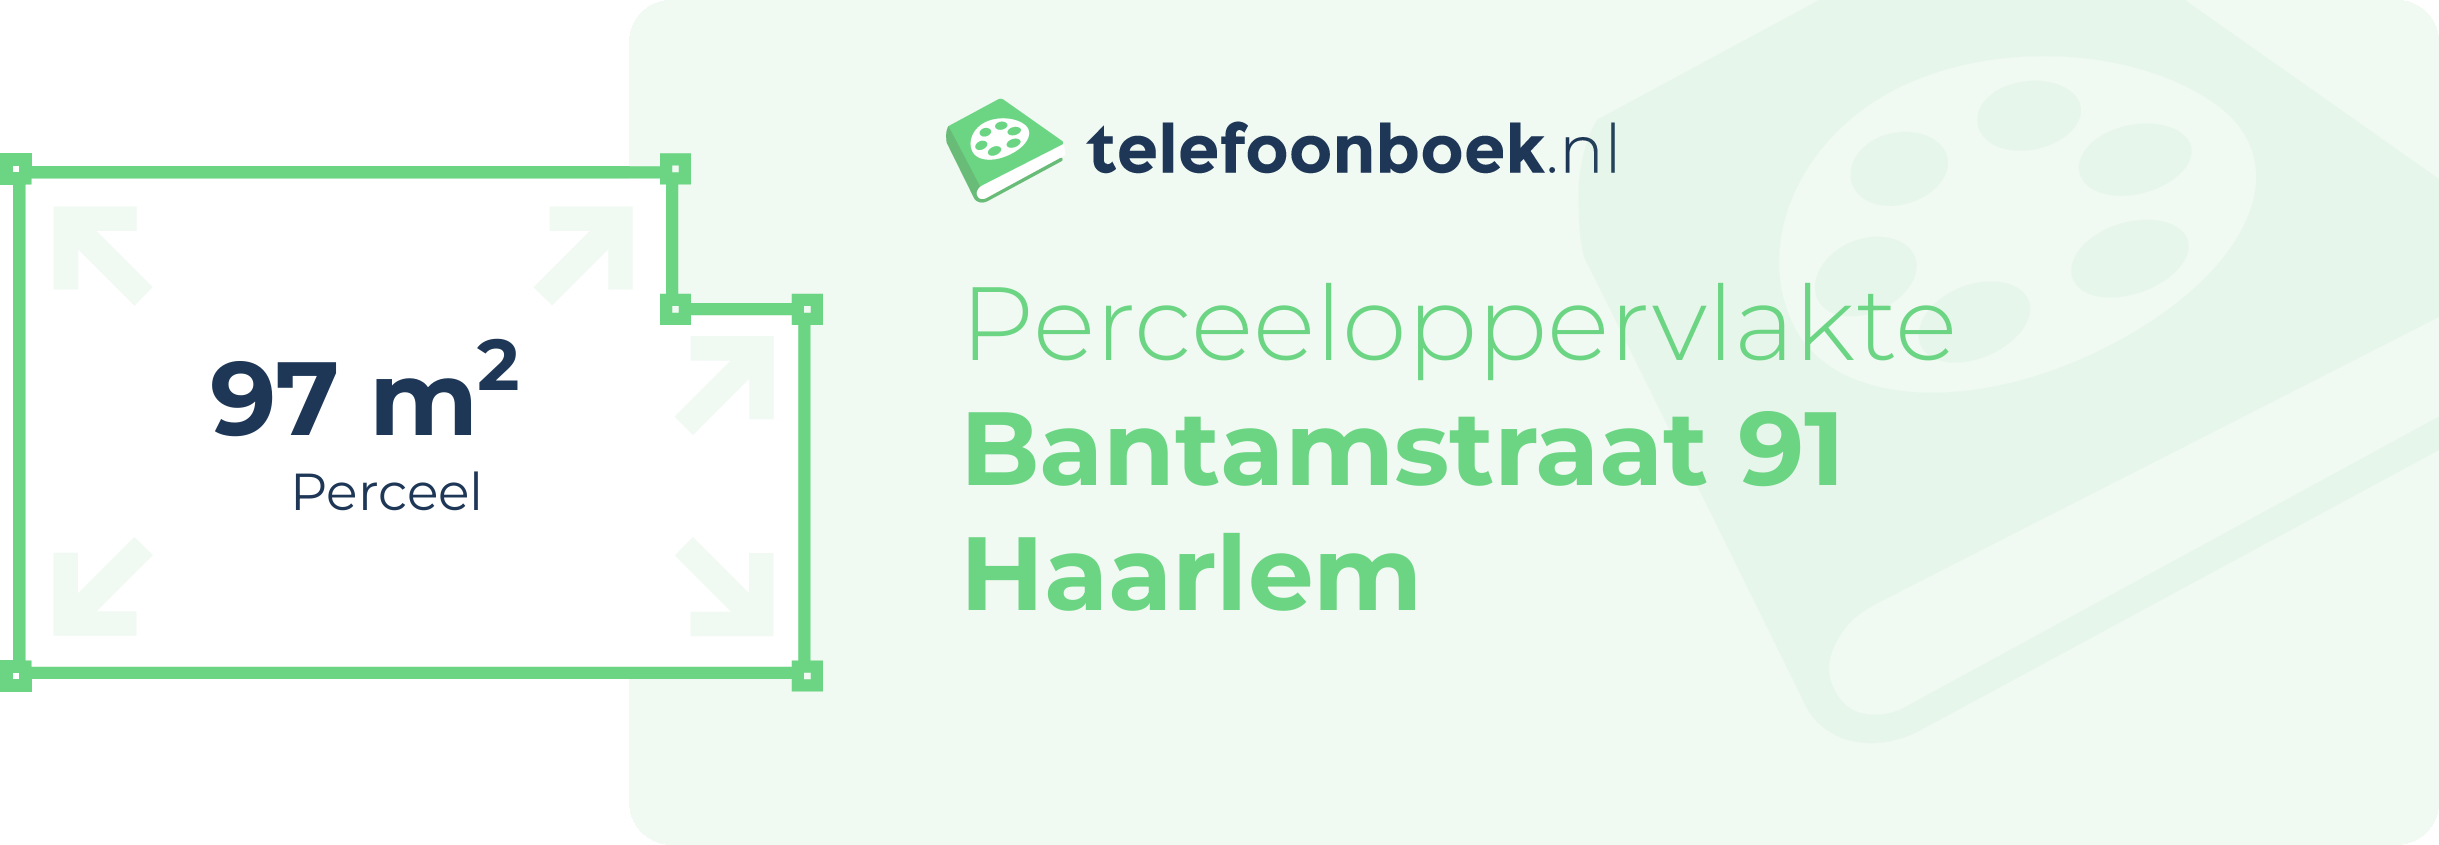 Perceeloppervlakte Bantamstraat 91 Haarlem